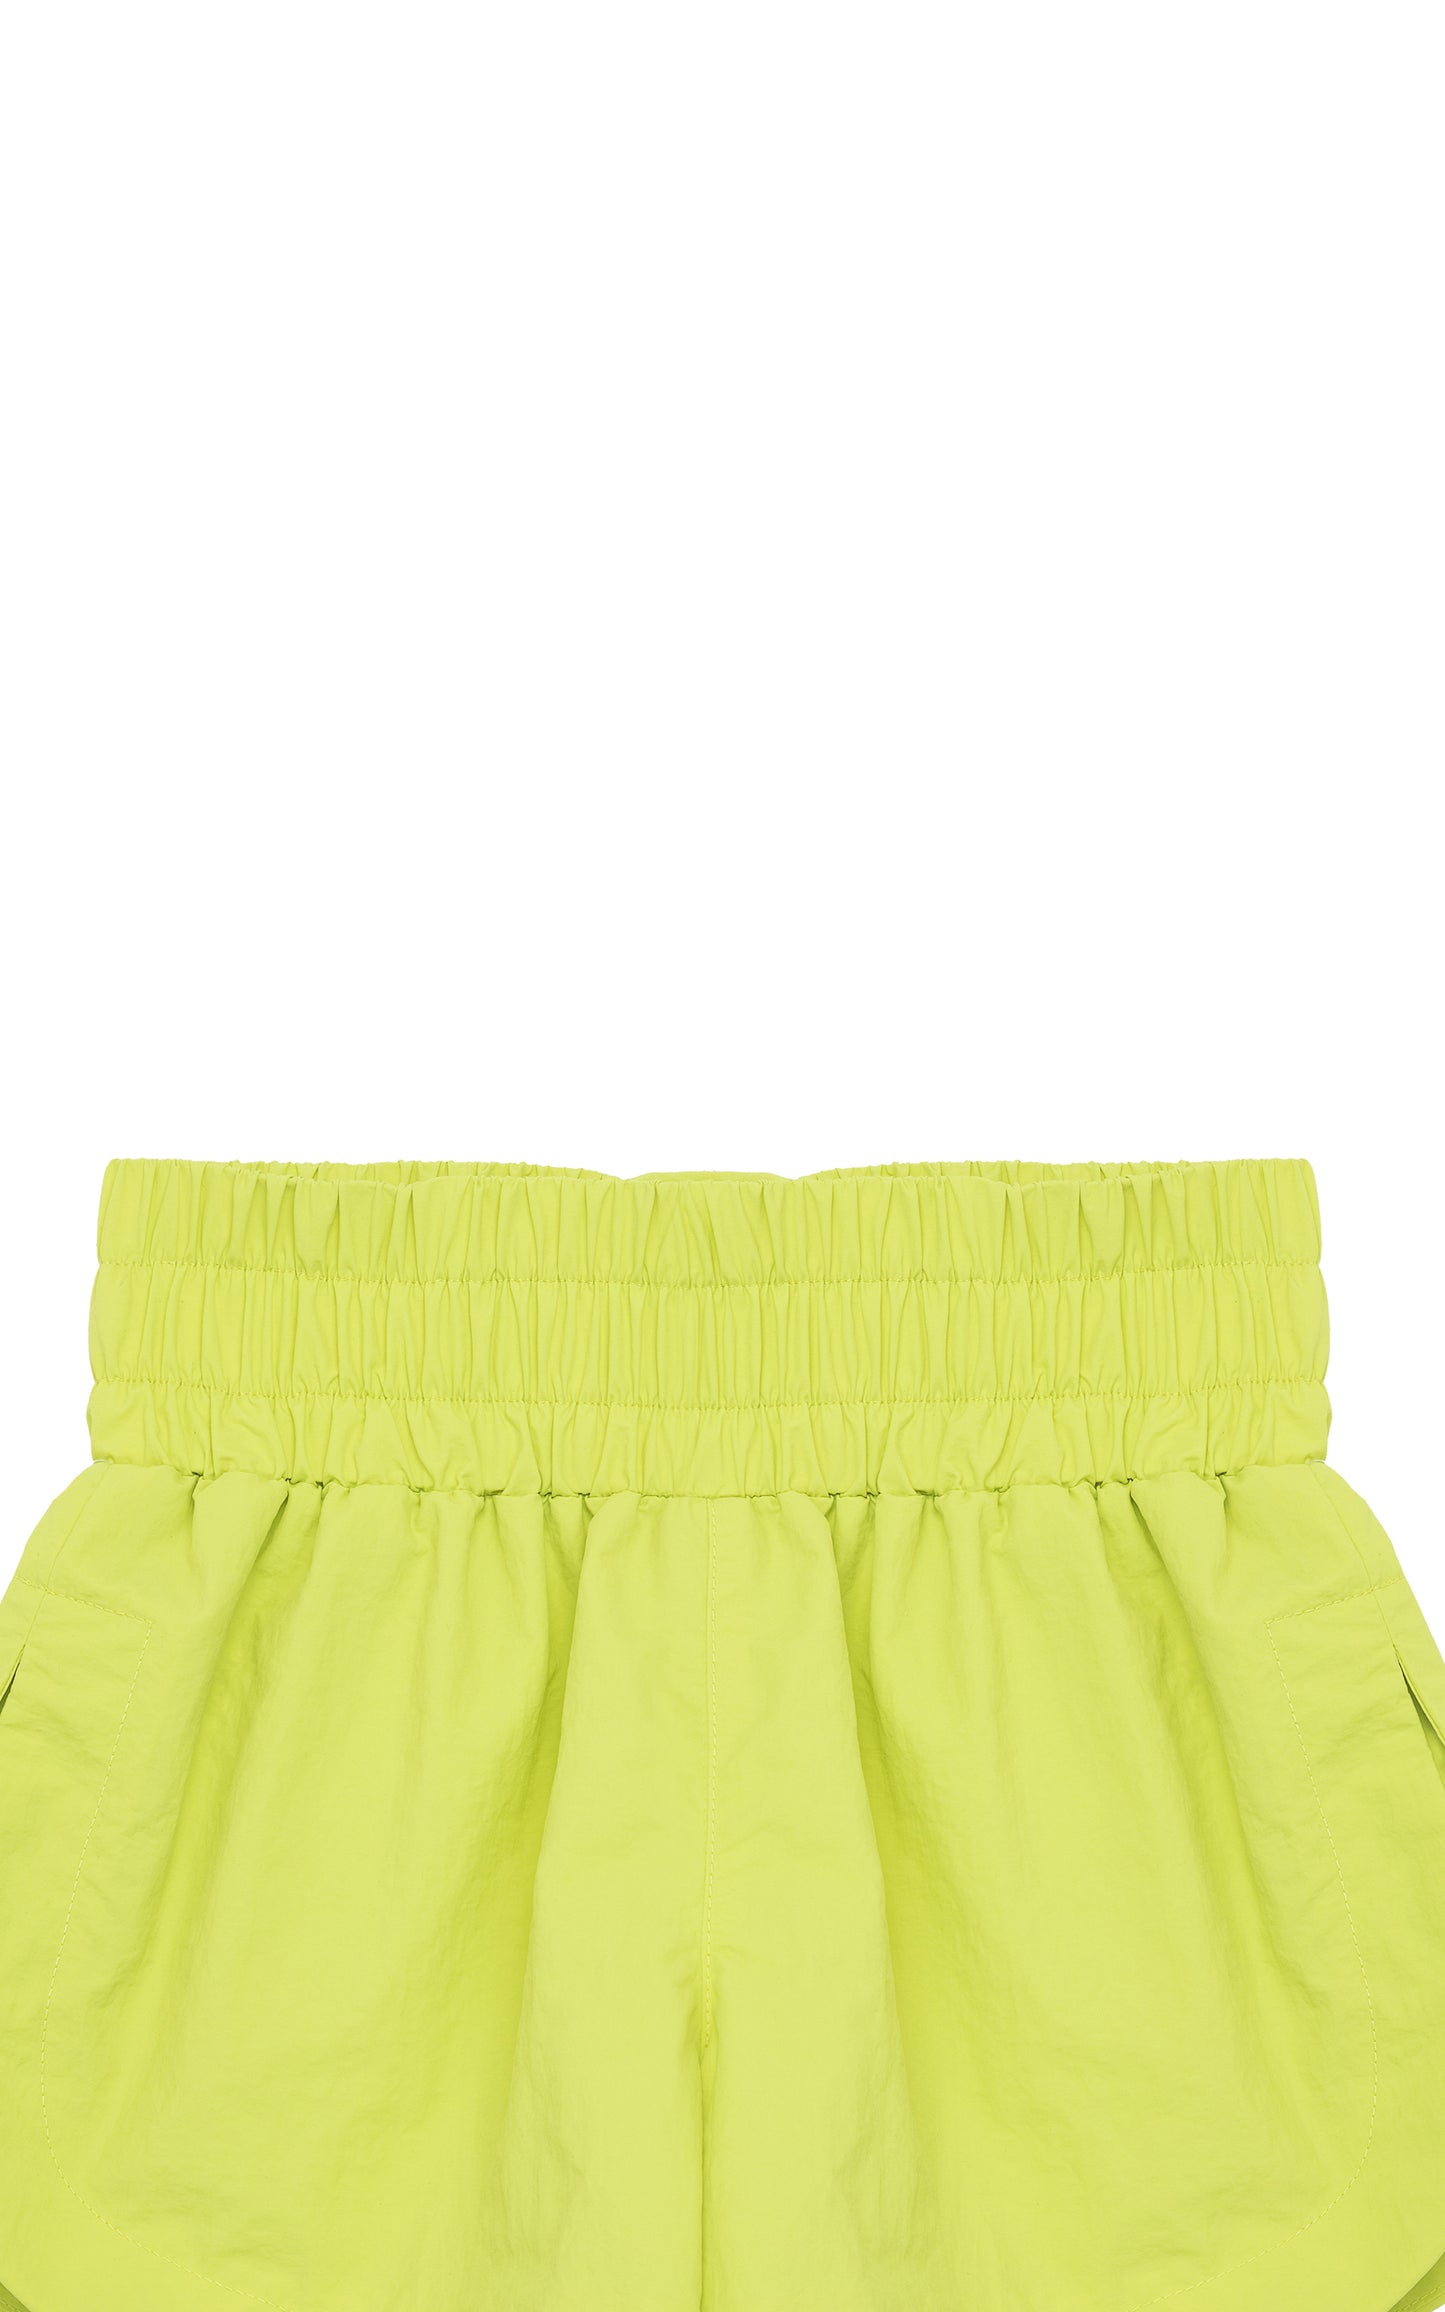 Habitual Girl Nylon Neon Pull On Shorts short